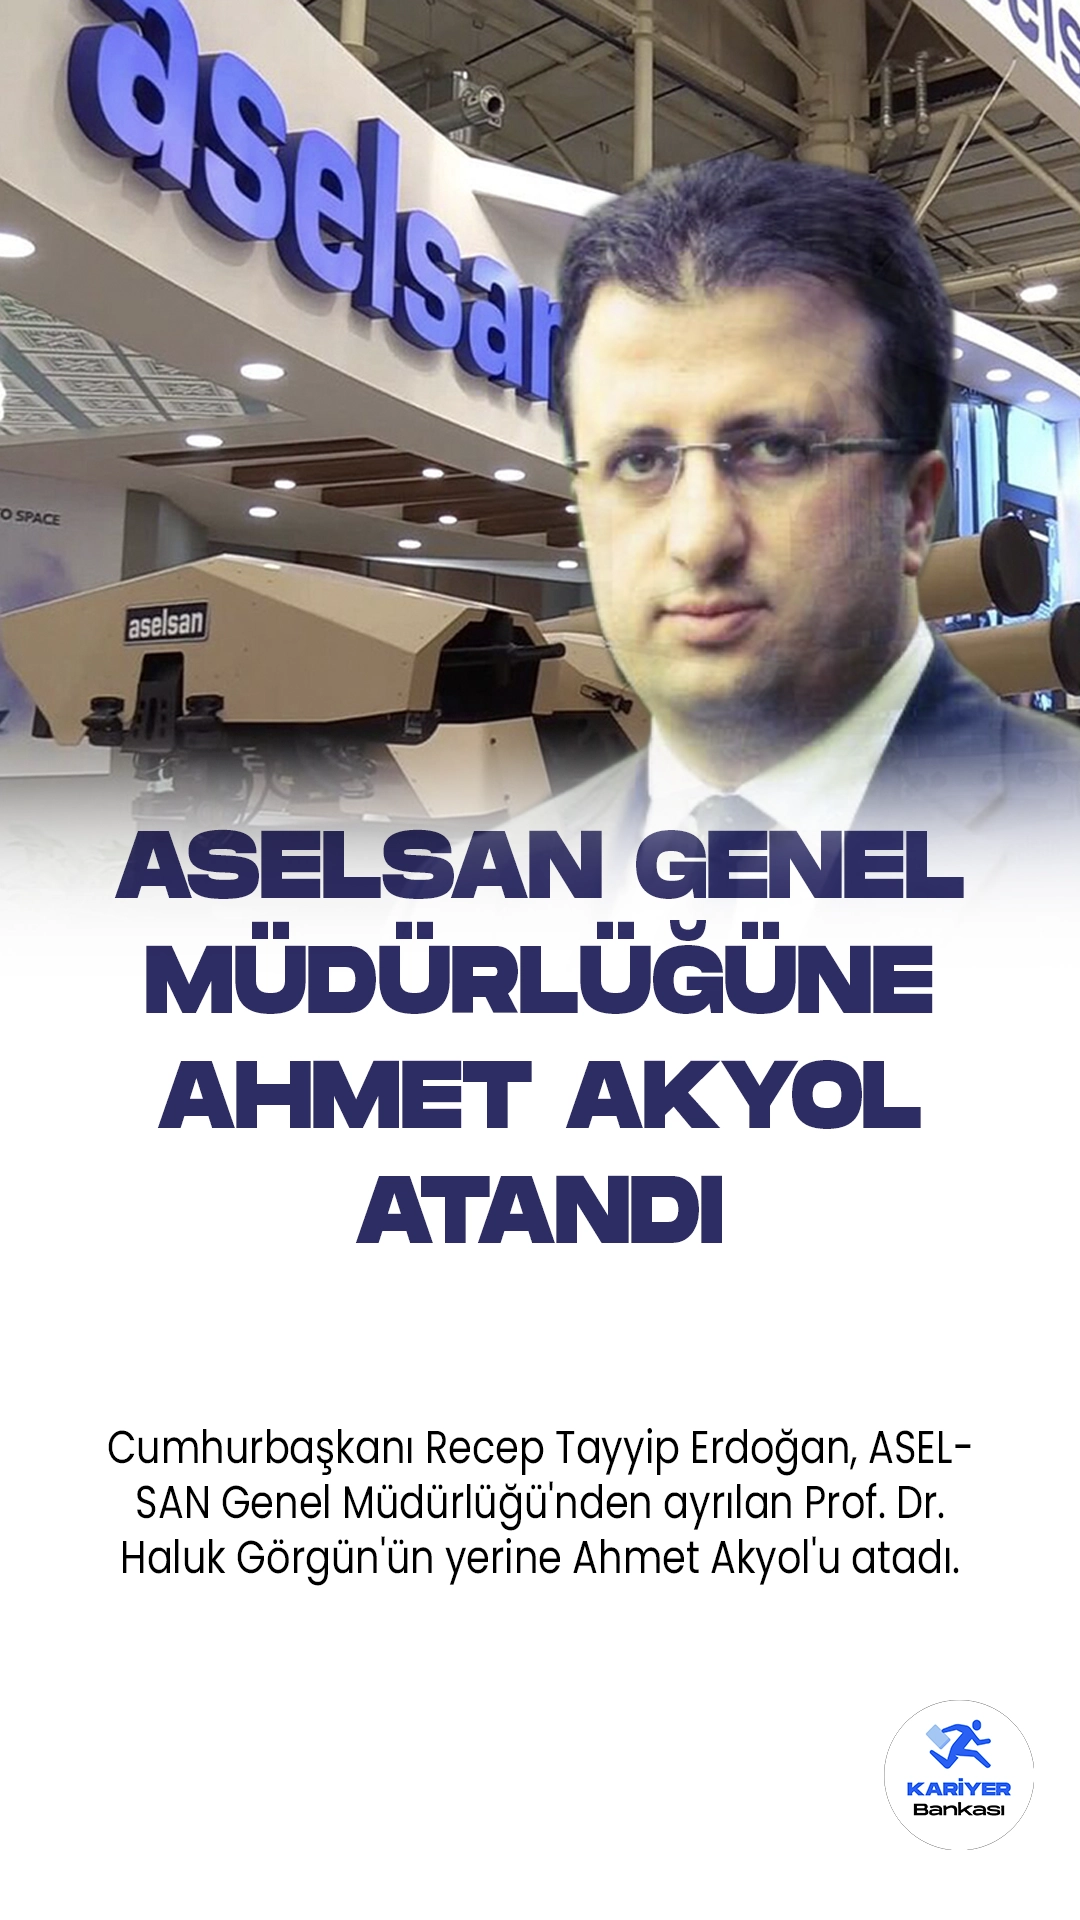 Cumhurbaşkanı Recep Tayyip Erdoğan, ASELSAN Genel Müdürlüğü'nden ayrılan Prof. Dr. Haluk Görgün'ün yerine Ahmet Akyol'u atadı.